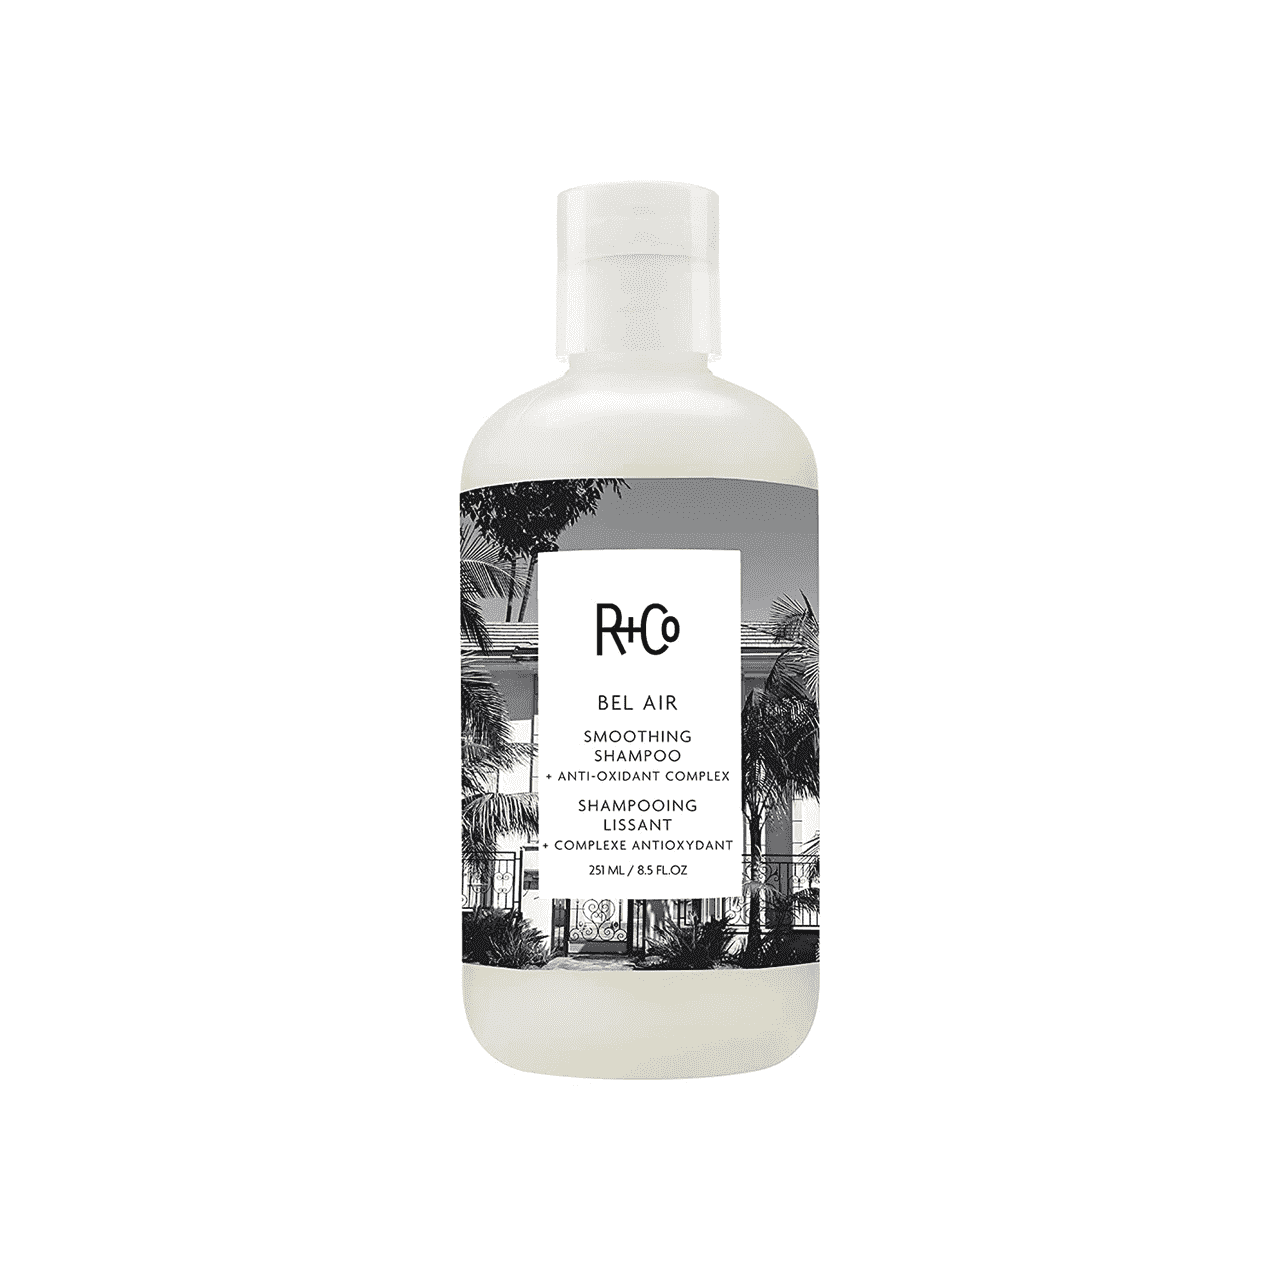 Flasche R+Co Glättungsshampoo mit schwarz-weißem Etikett